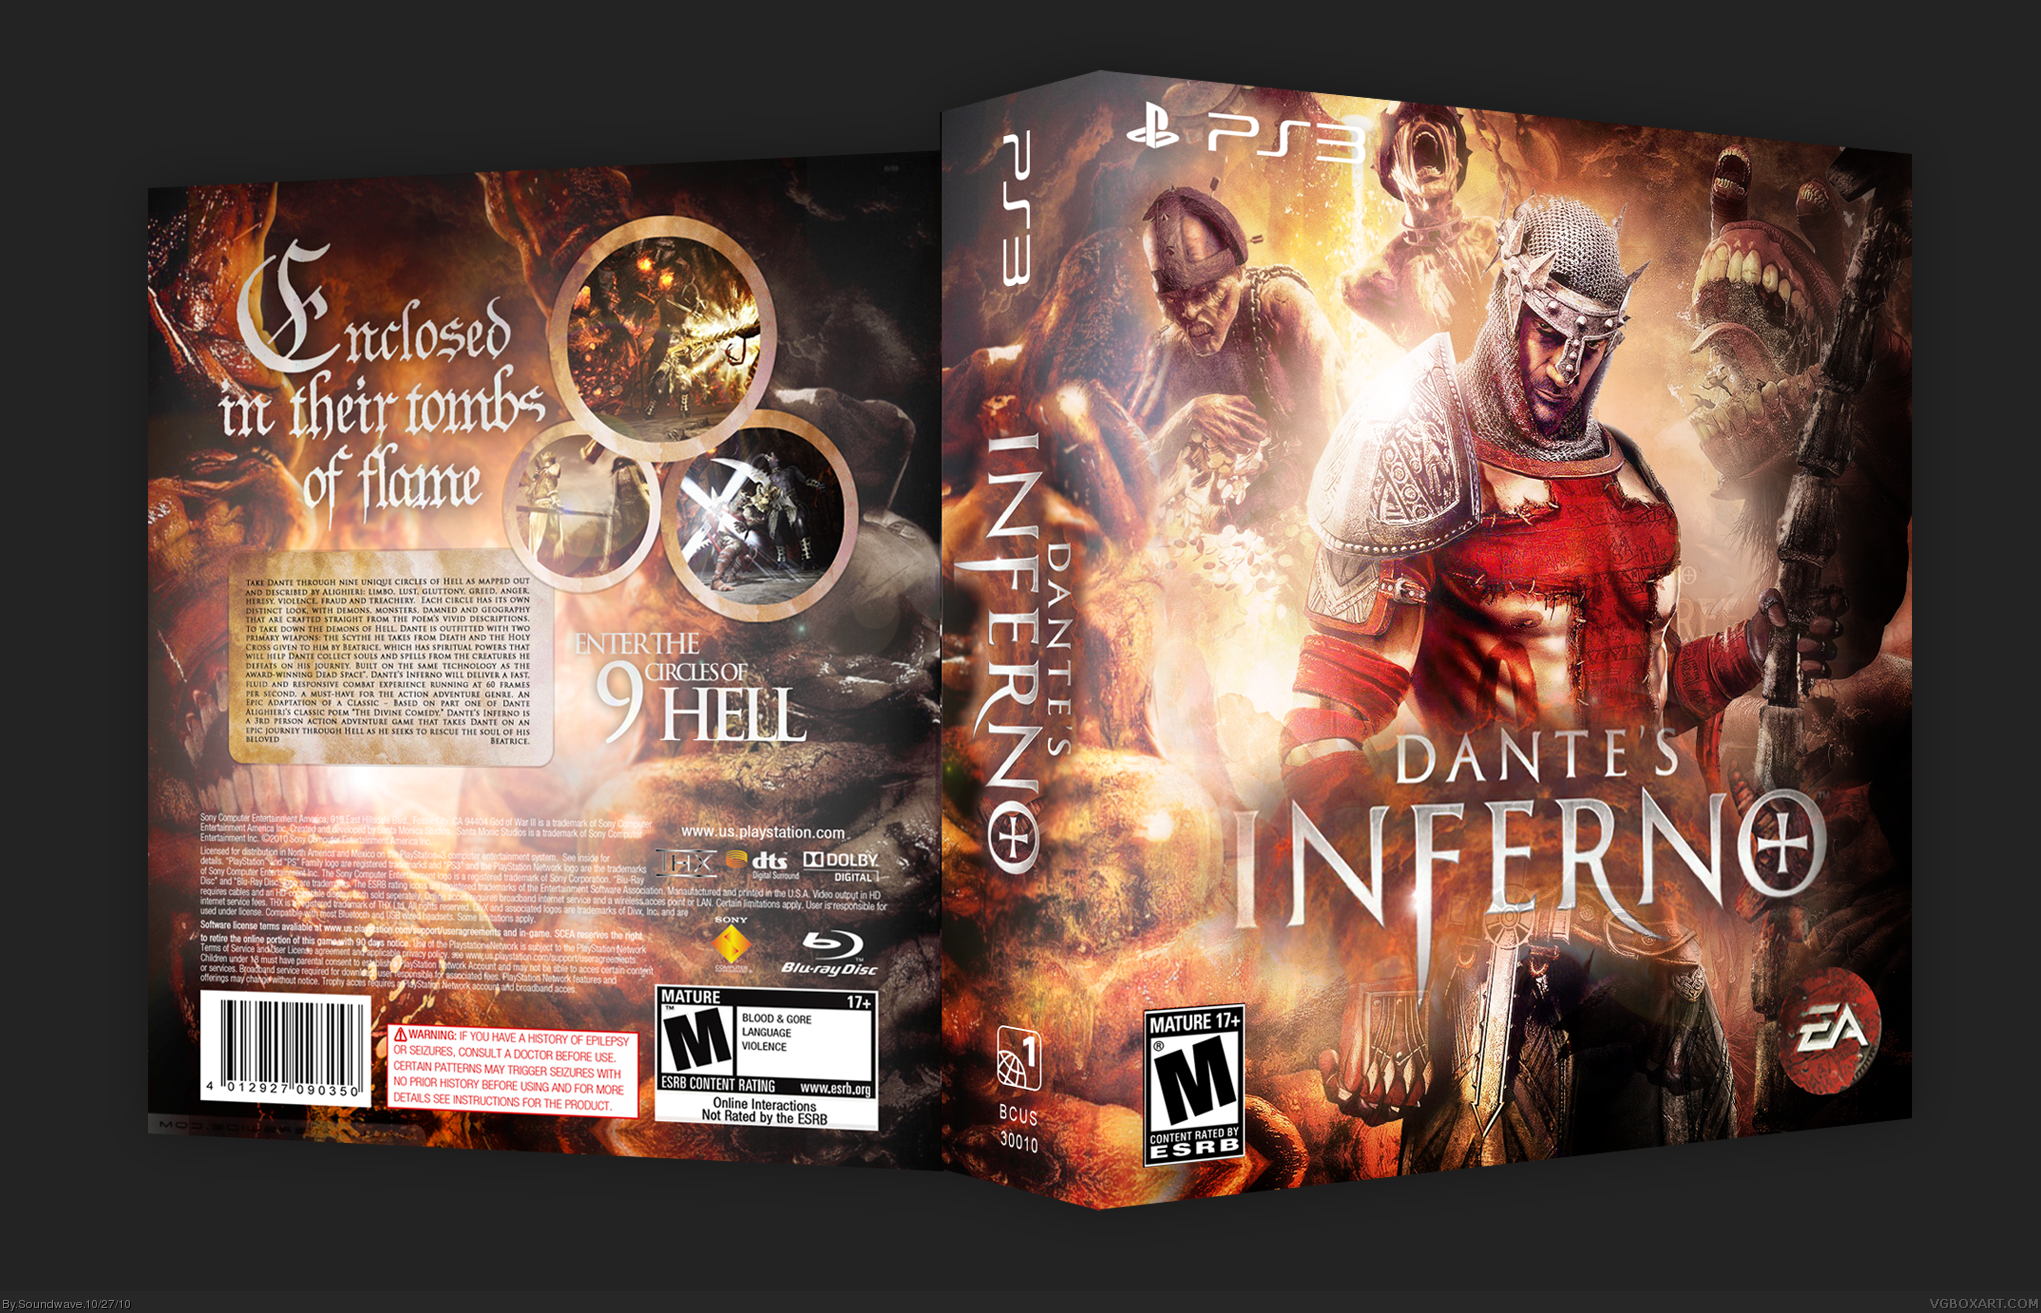 Dante's Inferno box cover